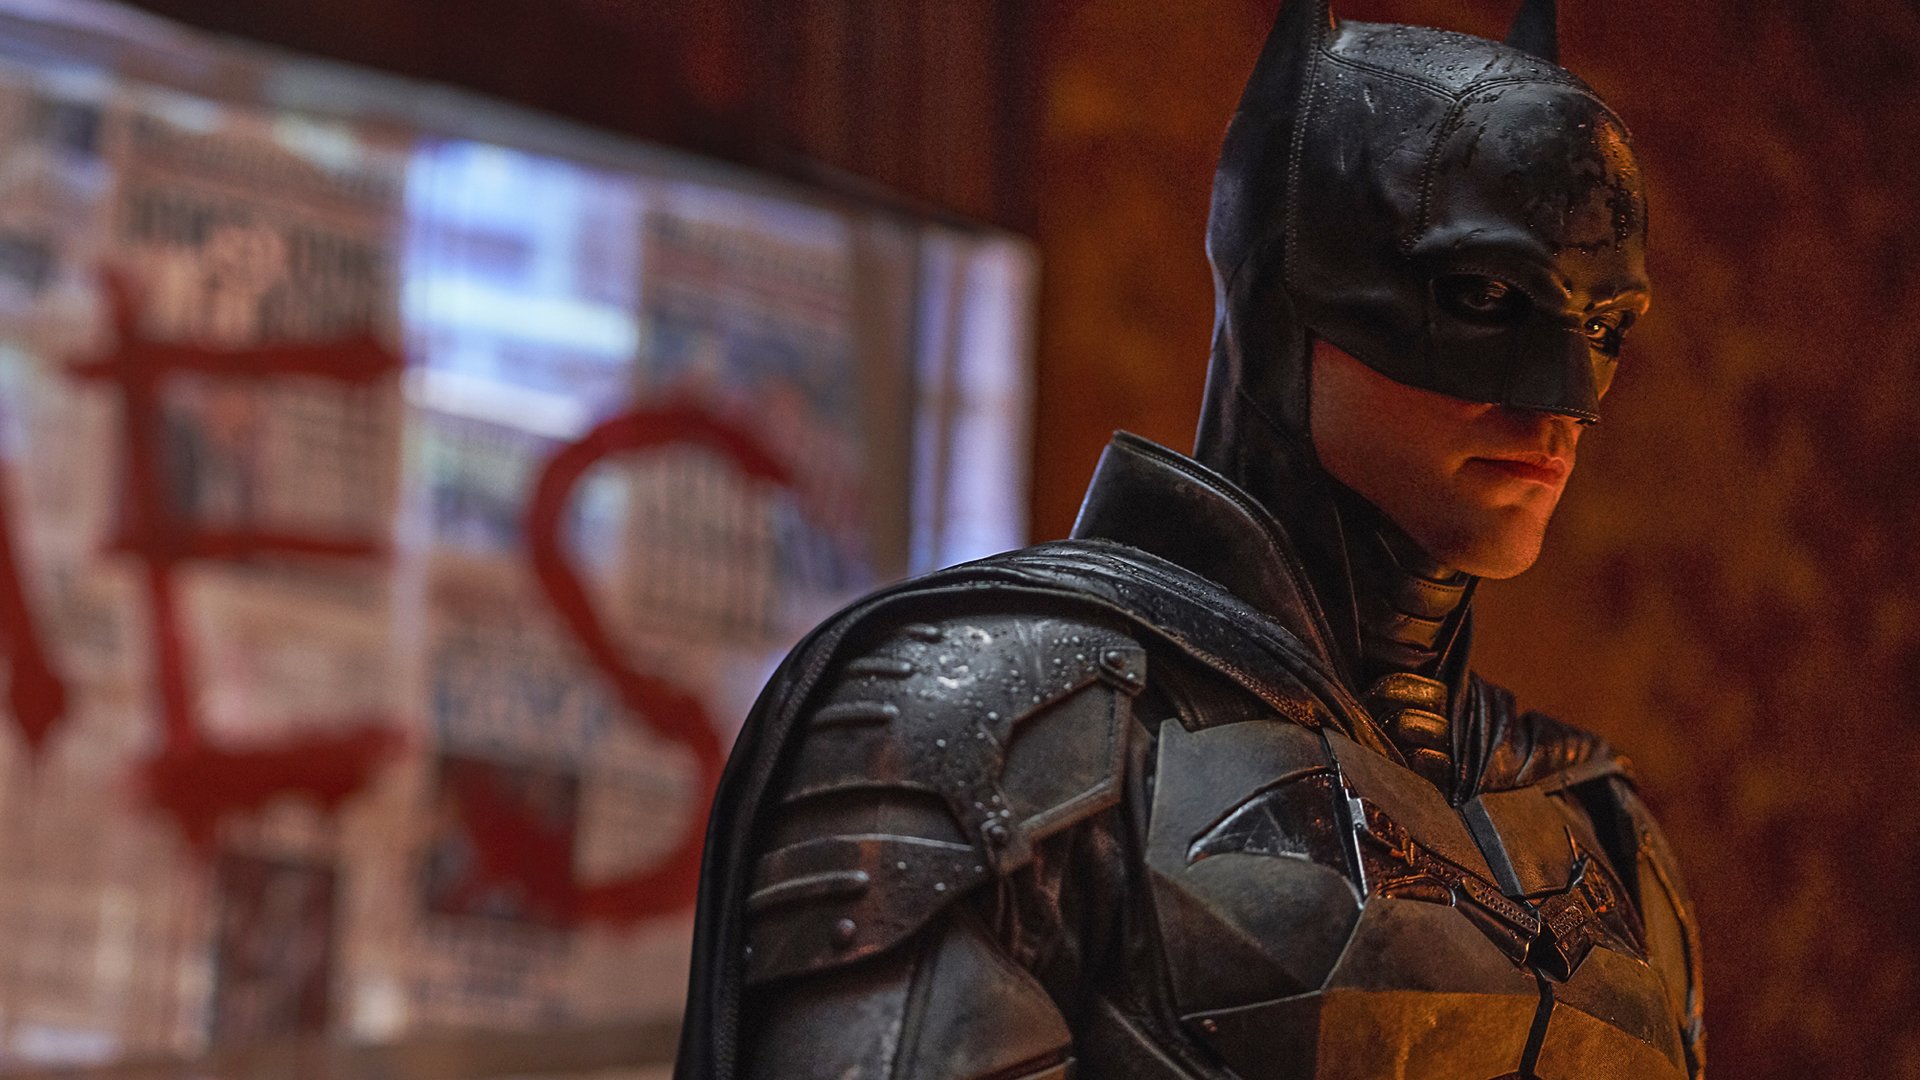 #„The Batman 2“: Wie könnte es weitergehen?